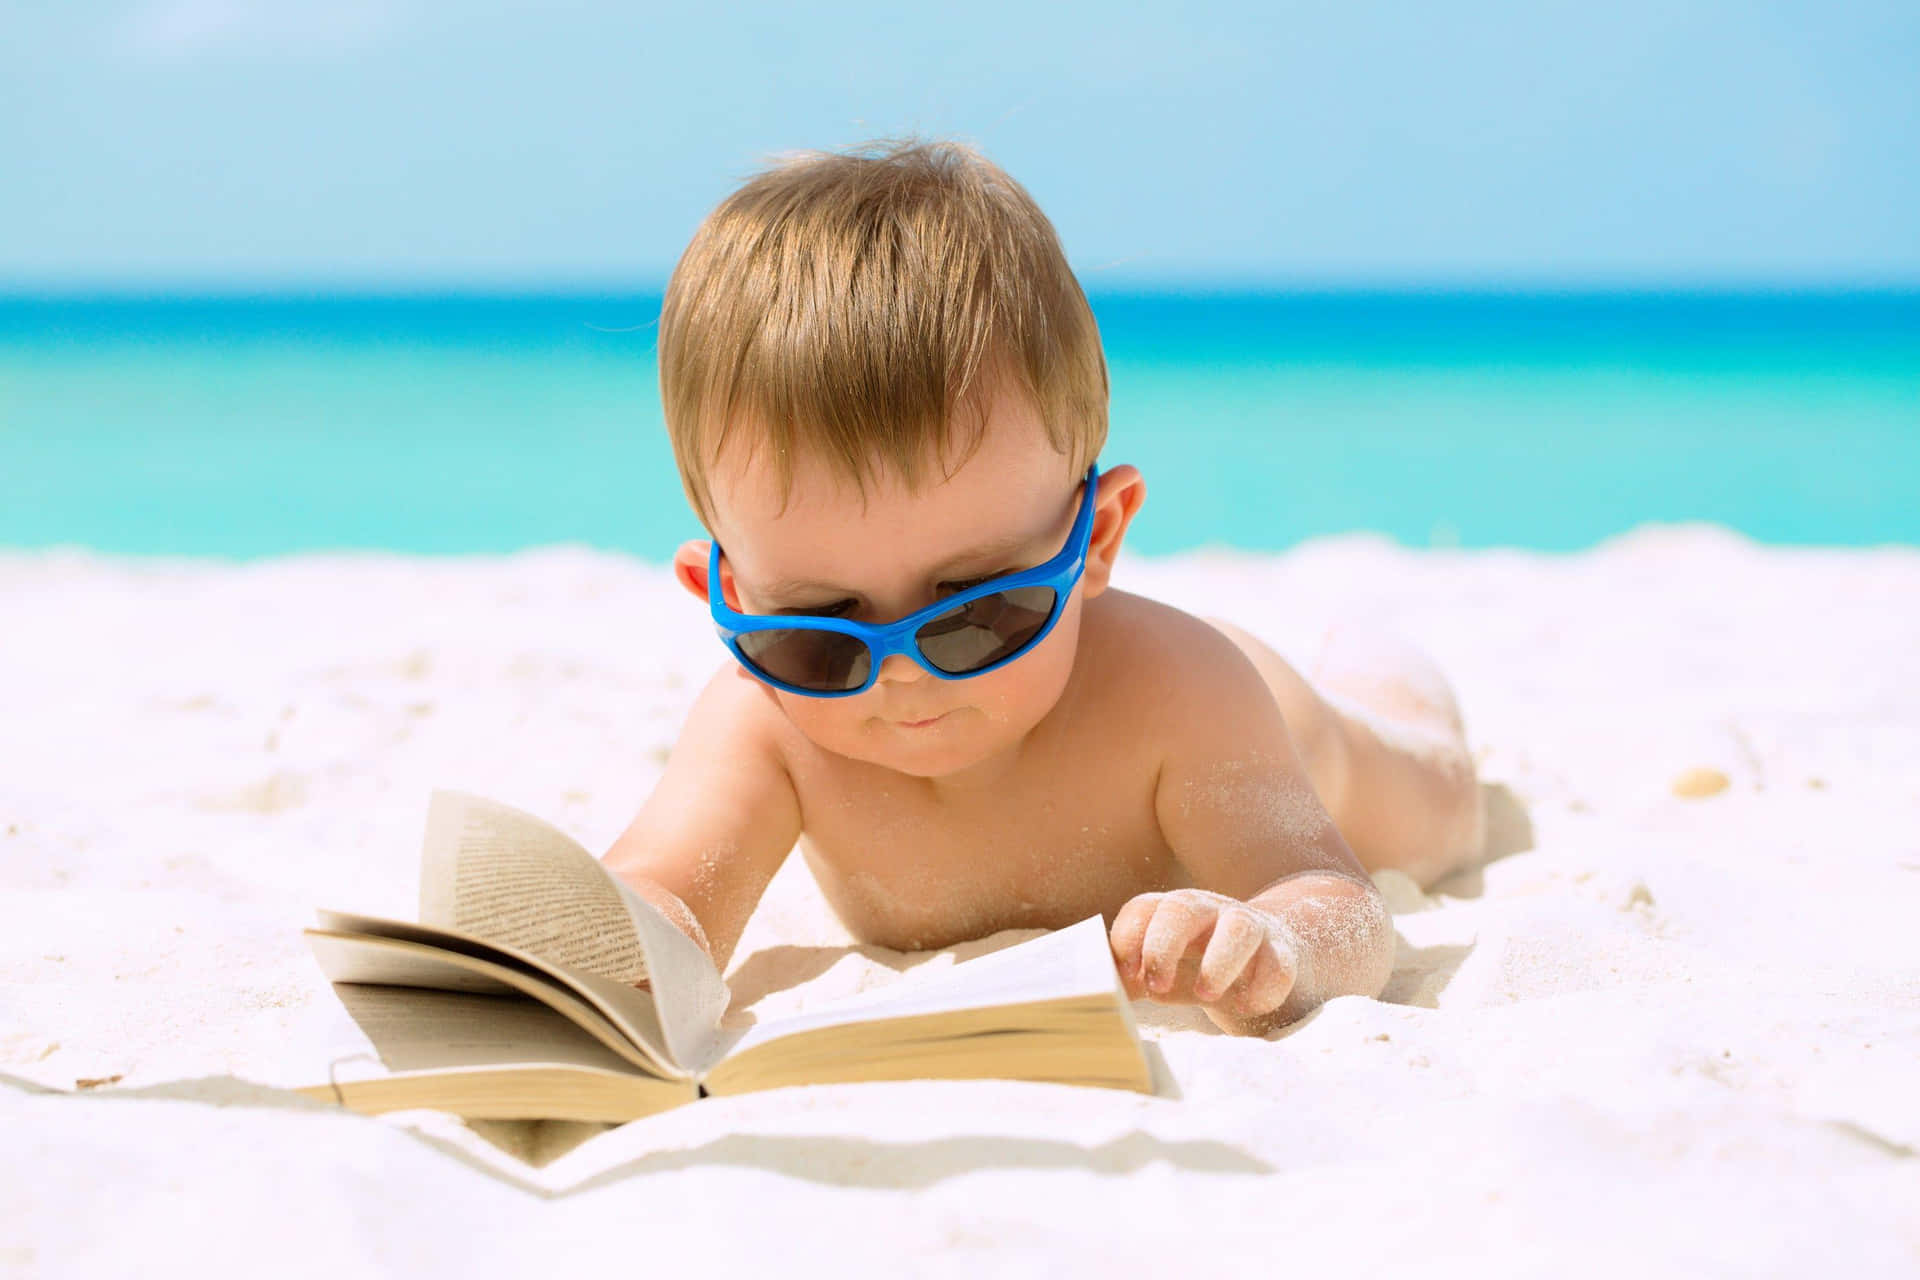 Unbebé Usando Gafas De Sol Y Leyendo Un Libro En La Playa.